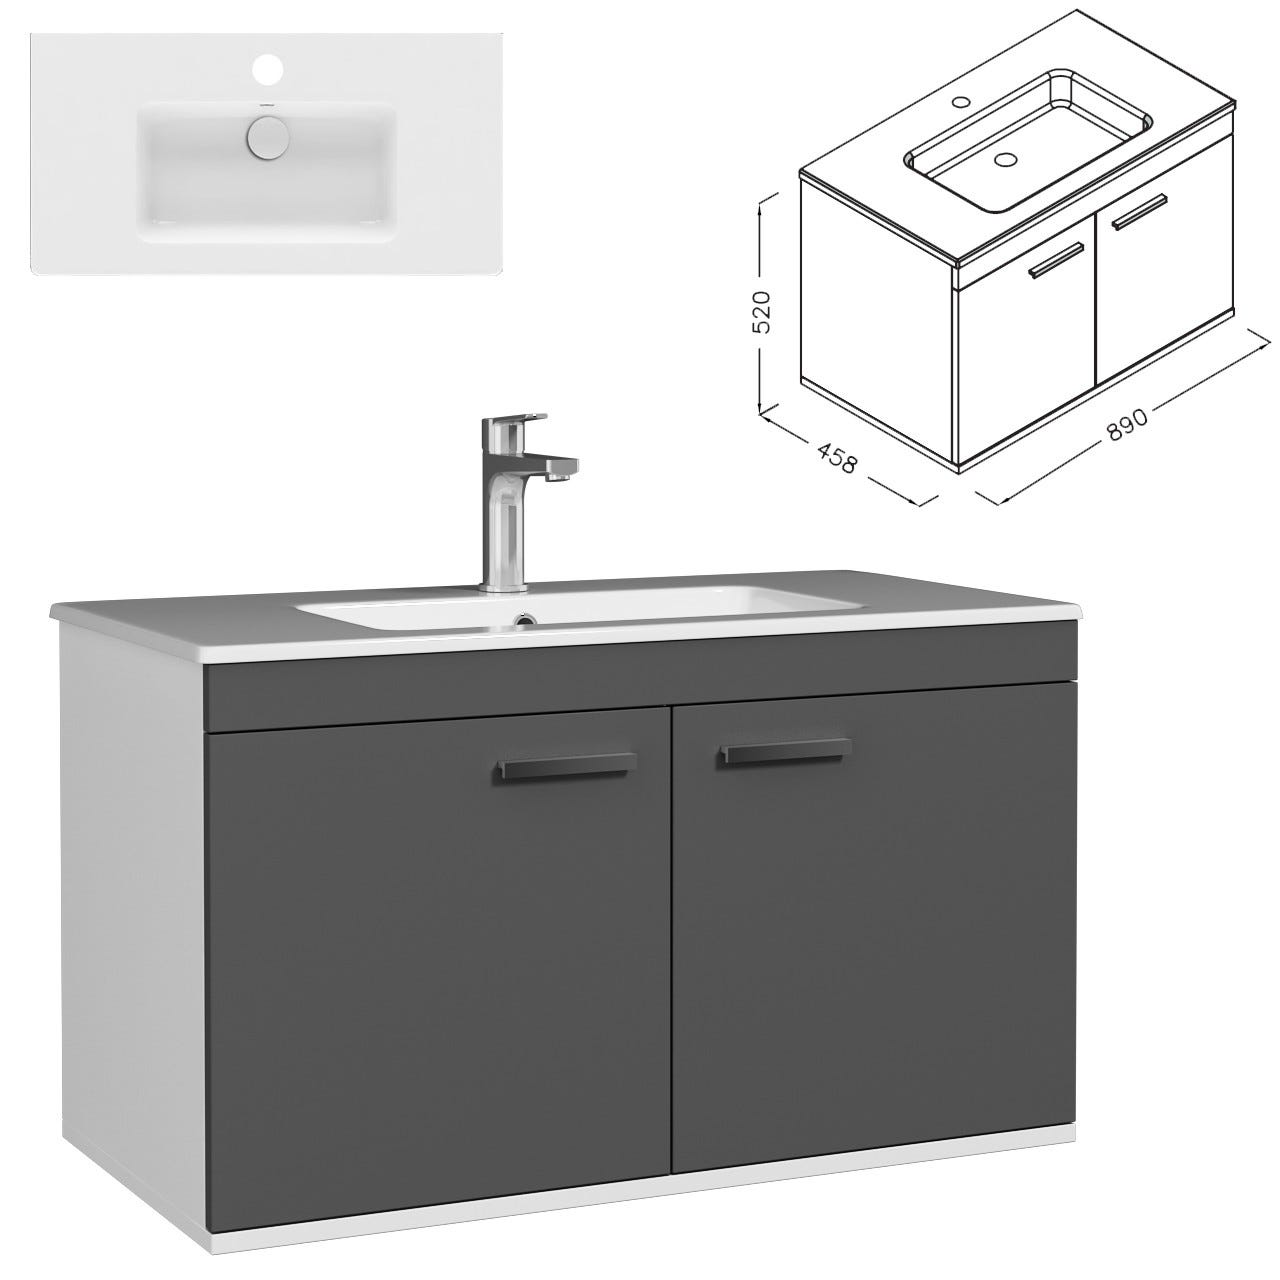 RUBITE Meuble salle de bain simple vasque 2 portes gris anthracite largeur 90 cm 2